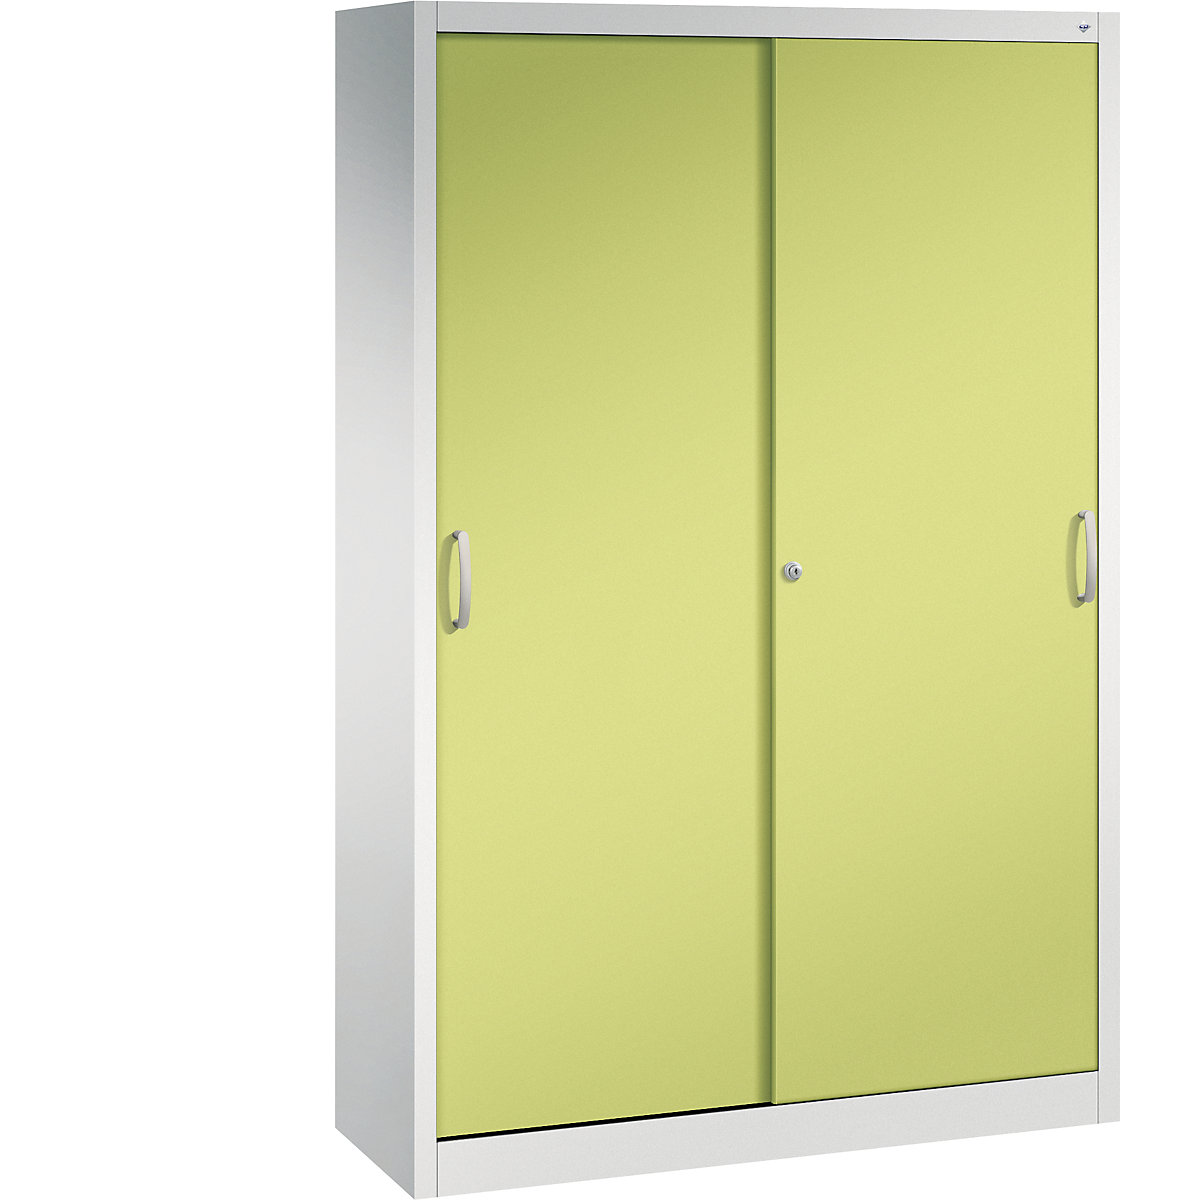 ACURADO sliding door cupboard – C+P, 3 shelves, 2 lockers, HxWxD 1950 x 1200 x 400 mm, light grey / viridian green-3